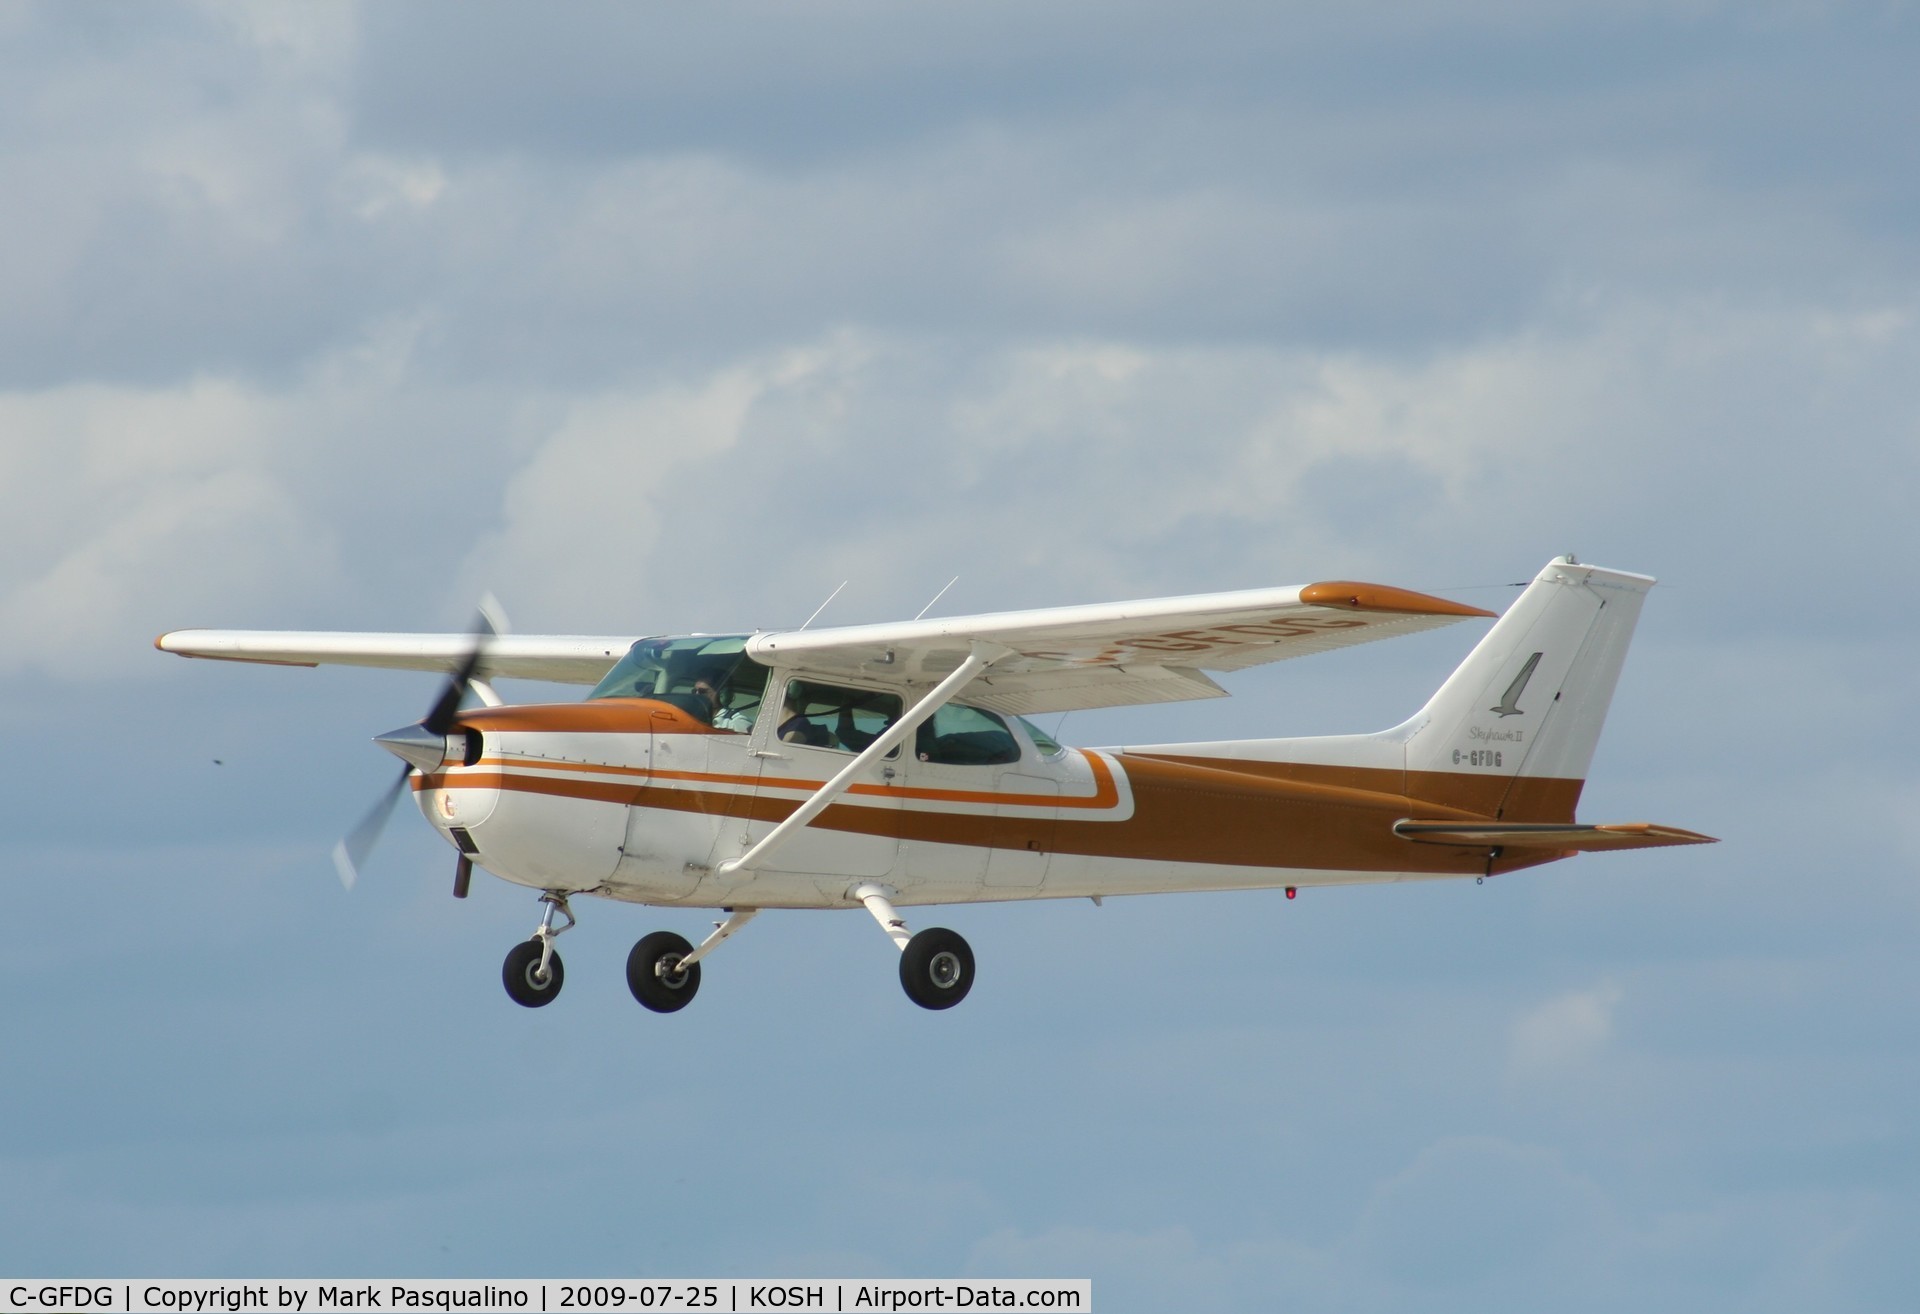 C-GFDG, 1974 Cessna 172M C/N 17263199, Cessna 172